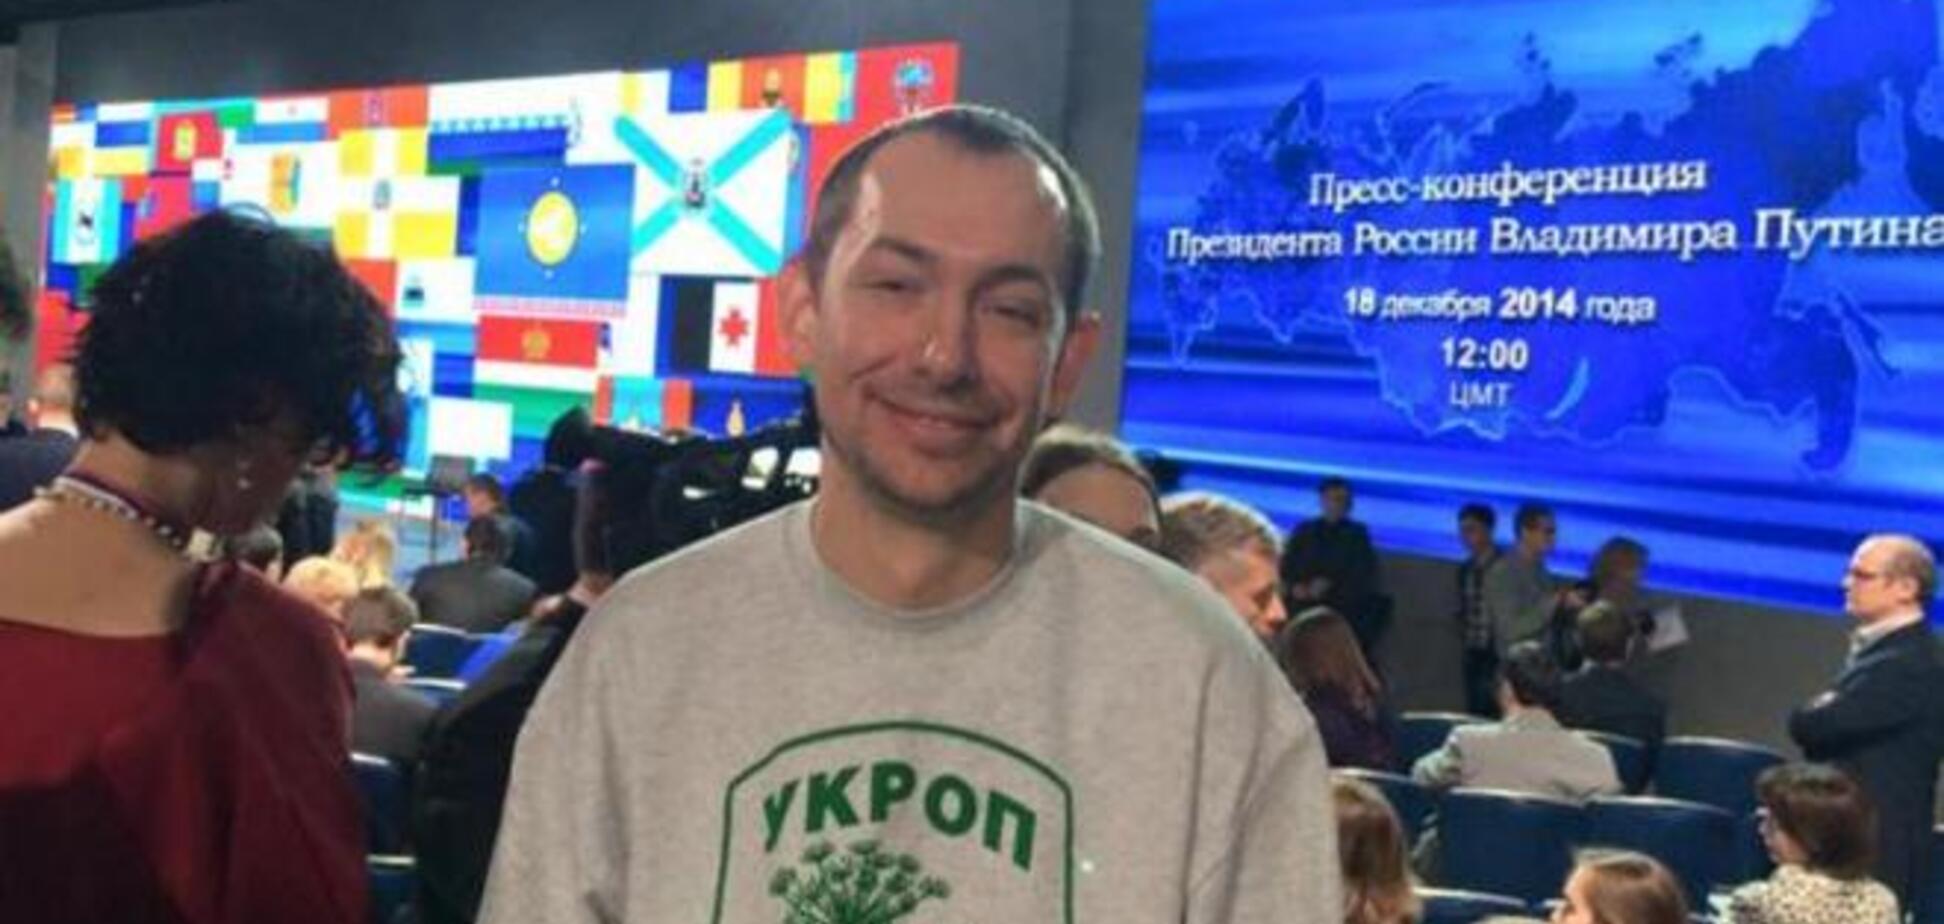 Украинский журналист пришел на пресс-конференцию Путина в футболке с надписью 'Укроп'